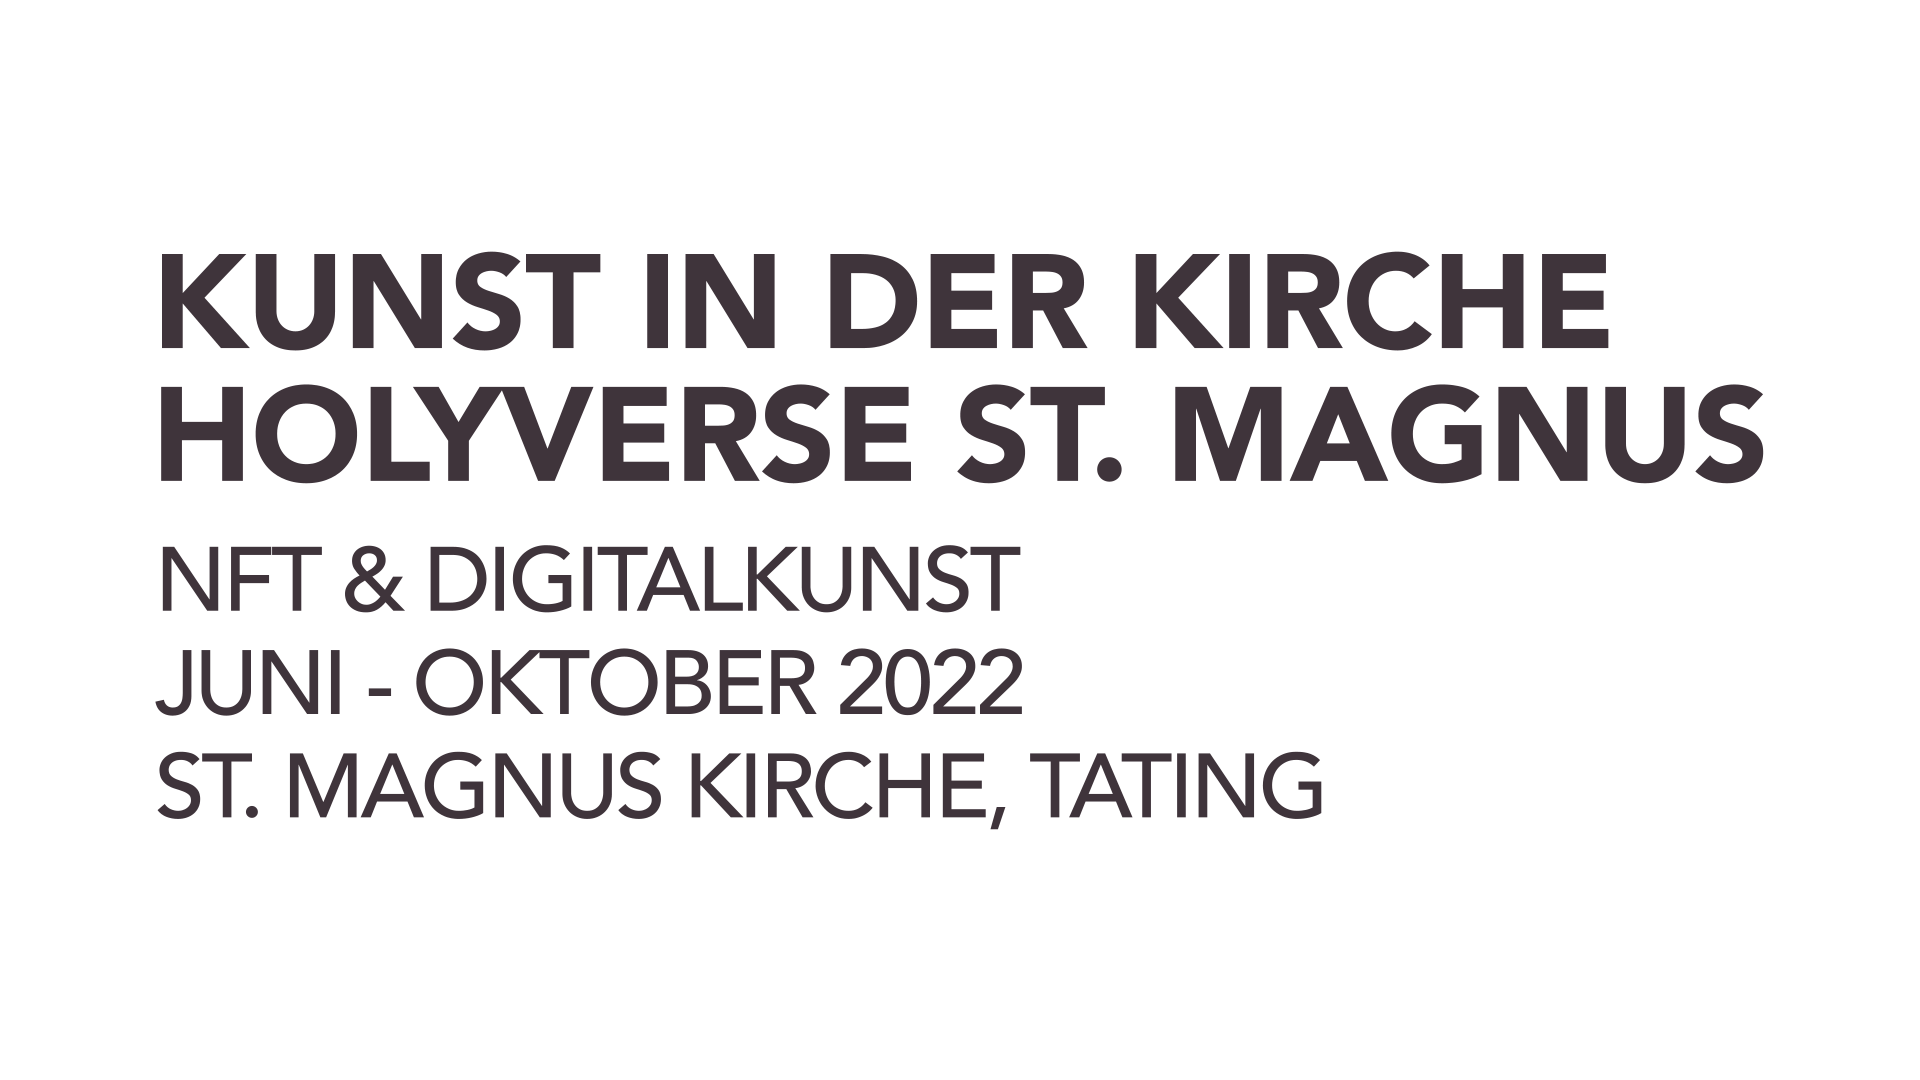 Kunst in der Kirche: Holyverse St. Magnus – NFT & Digitalkunst. Von 05. Juni - 31. Oktober 2022, St. Magnus Kirche, Tating